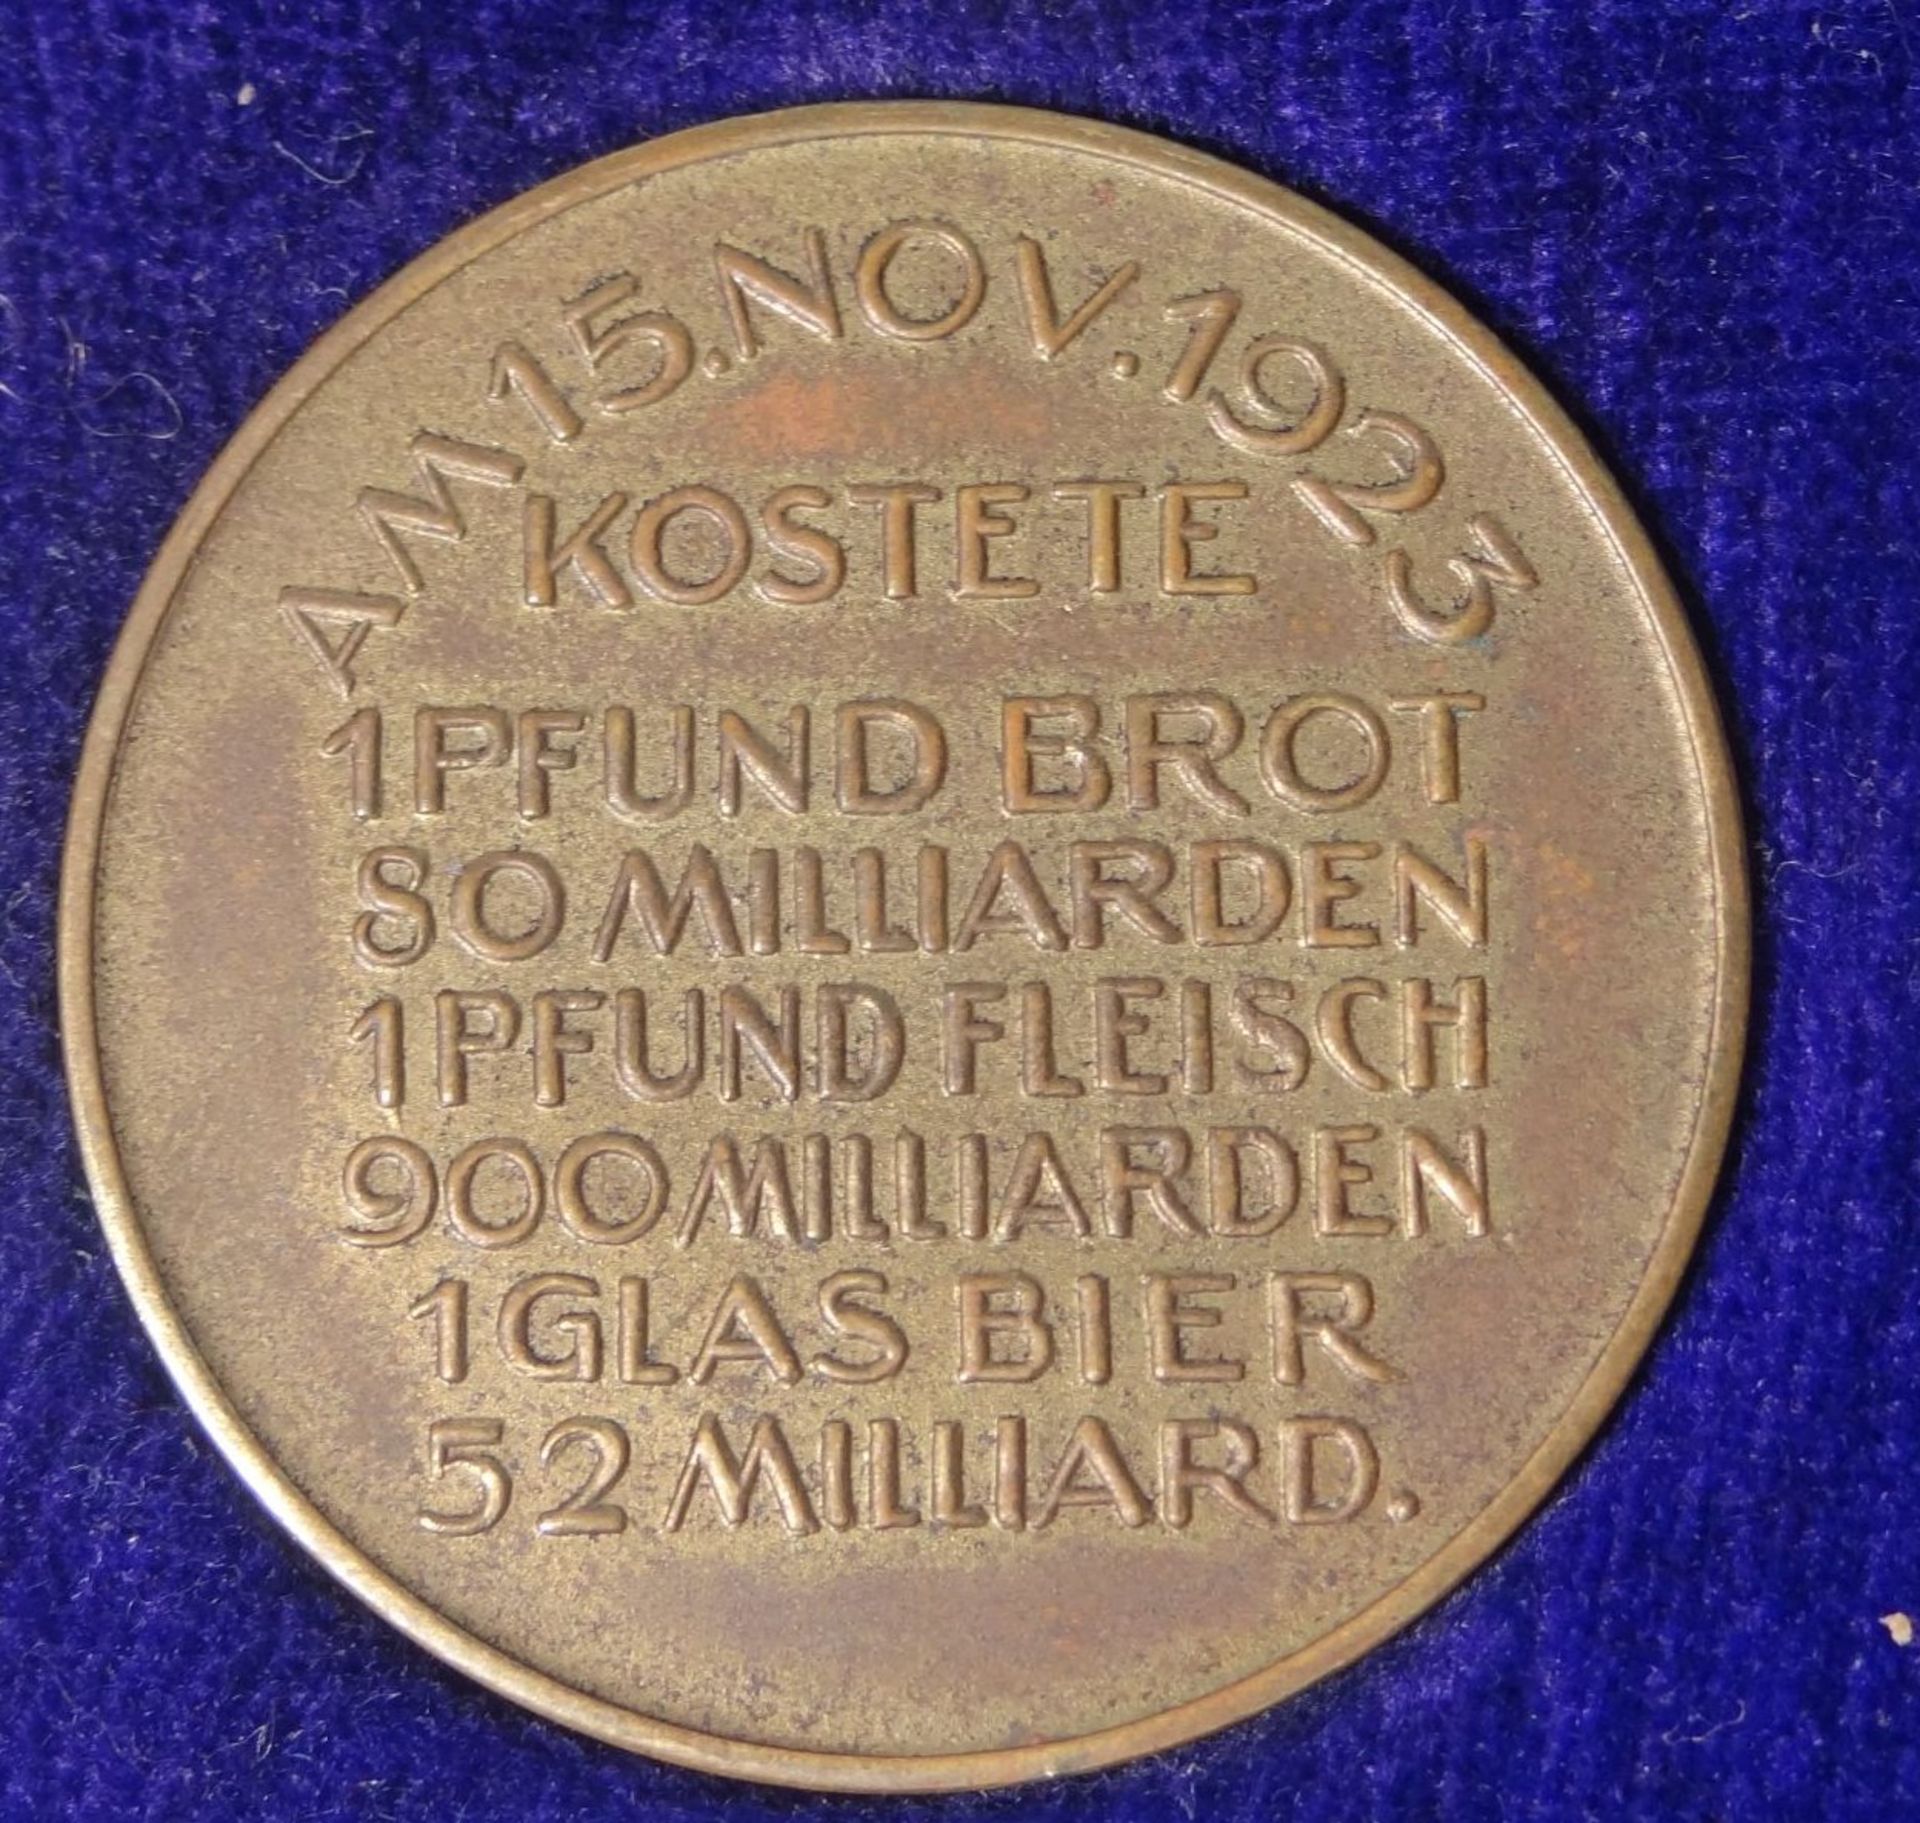 3x Medaillen "Des deutschen Volkes Leidensweg" Inflation 1923, in beschädigter Schachte - Bild 4 aus 7